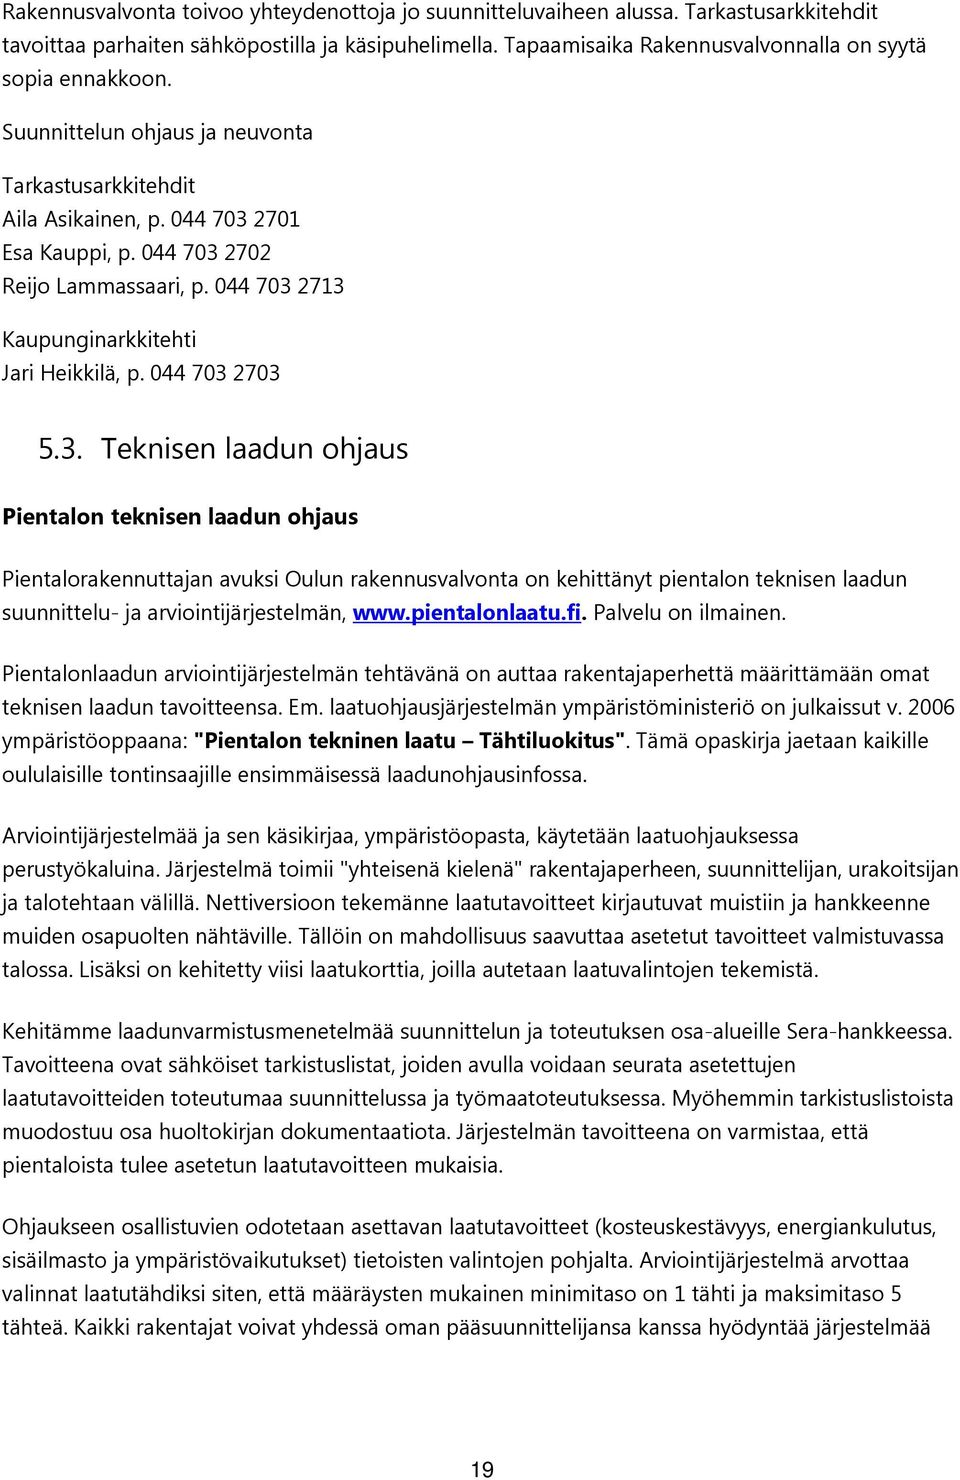 044 703 2713 Kaupunginarkkitehti Jari Heikkilä, p. 044 703 2703 5.3. Teknisen laadun ohjaus Pientalon teknisen laadun ohjaus Pientalorakennuttajan avuksi Oulun rakennusvalvonta on kehittänyt pientalon teknisen laadun suunnittelu- ja arviointijärjestelmän, www.